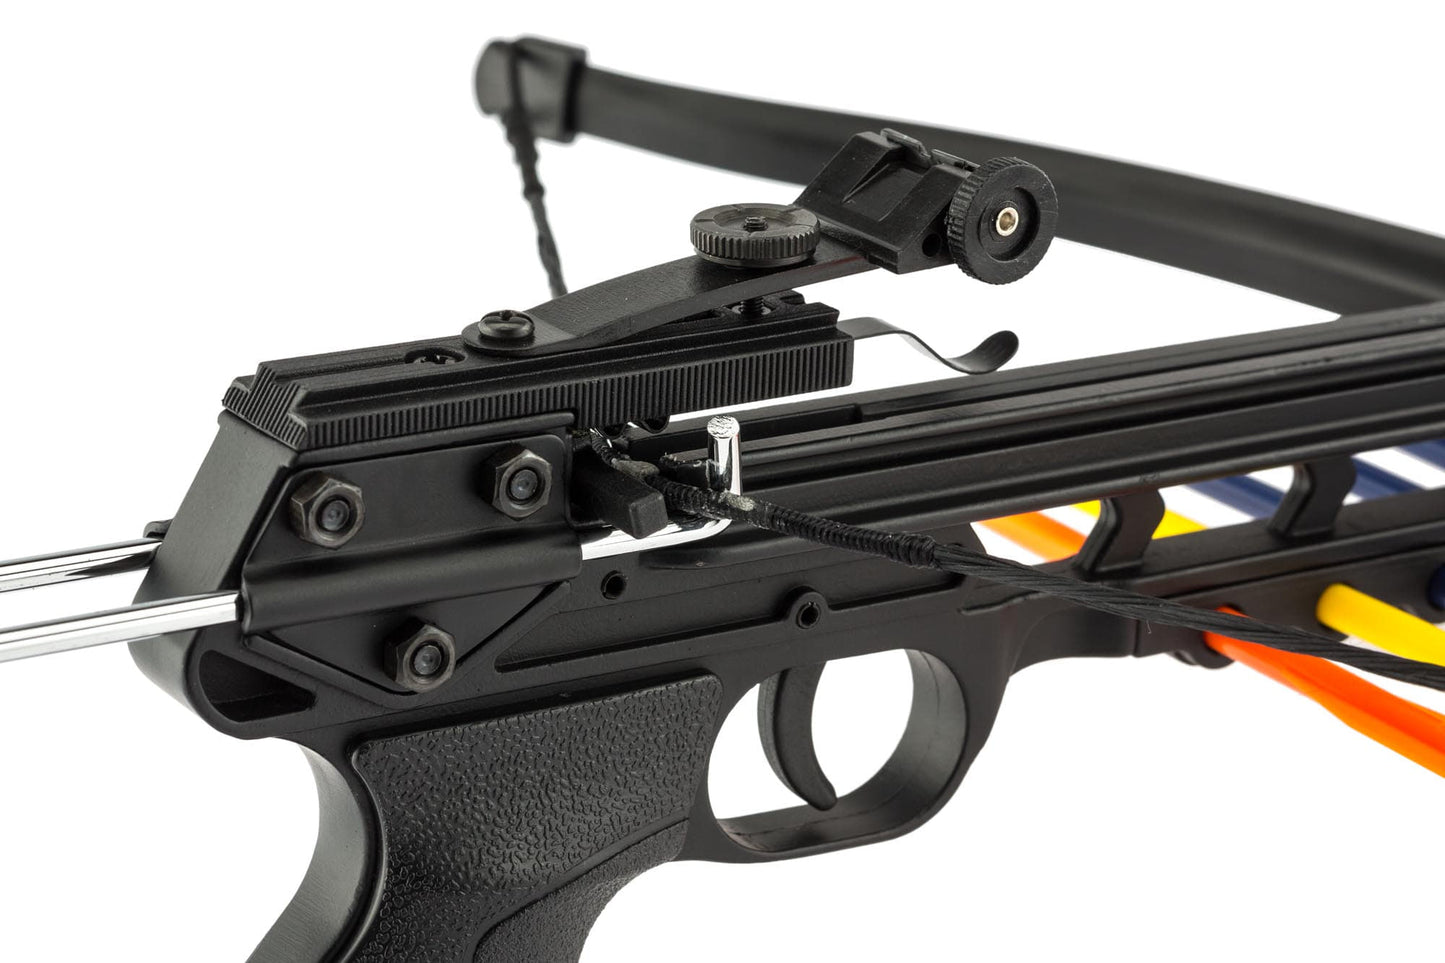 Mini arbalète pistolet CF115 - Shoot Again-T.A DEFENSE